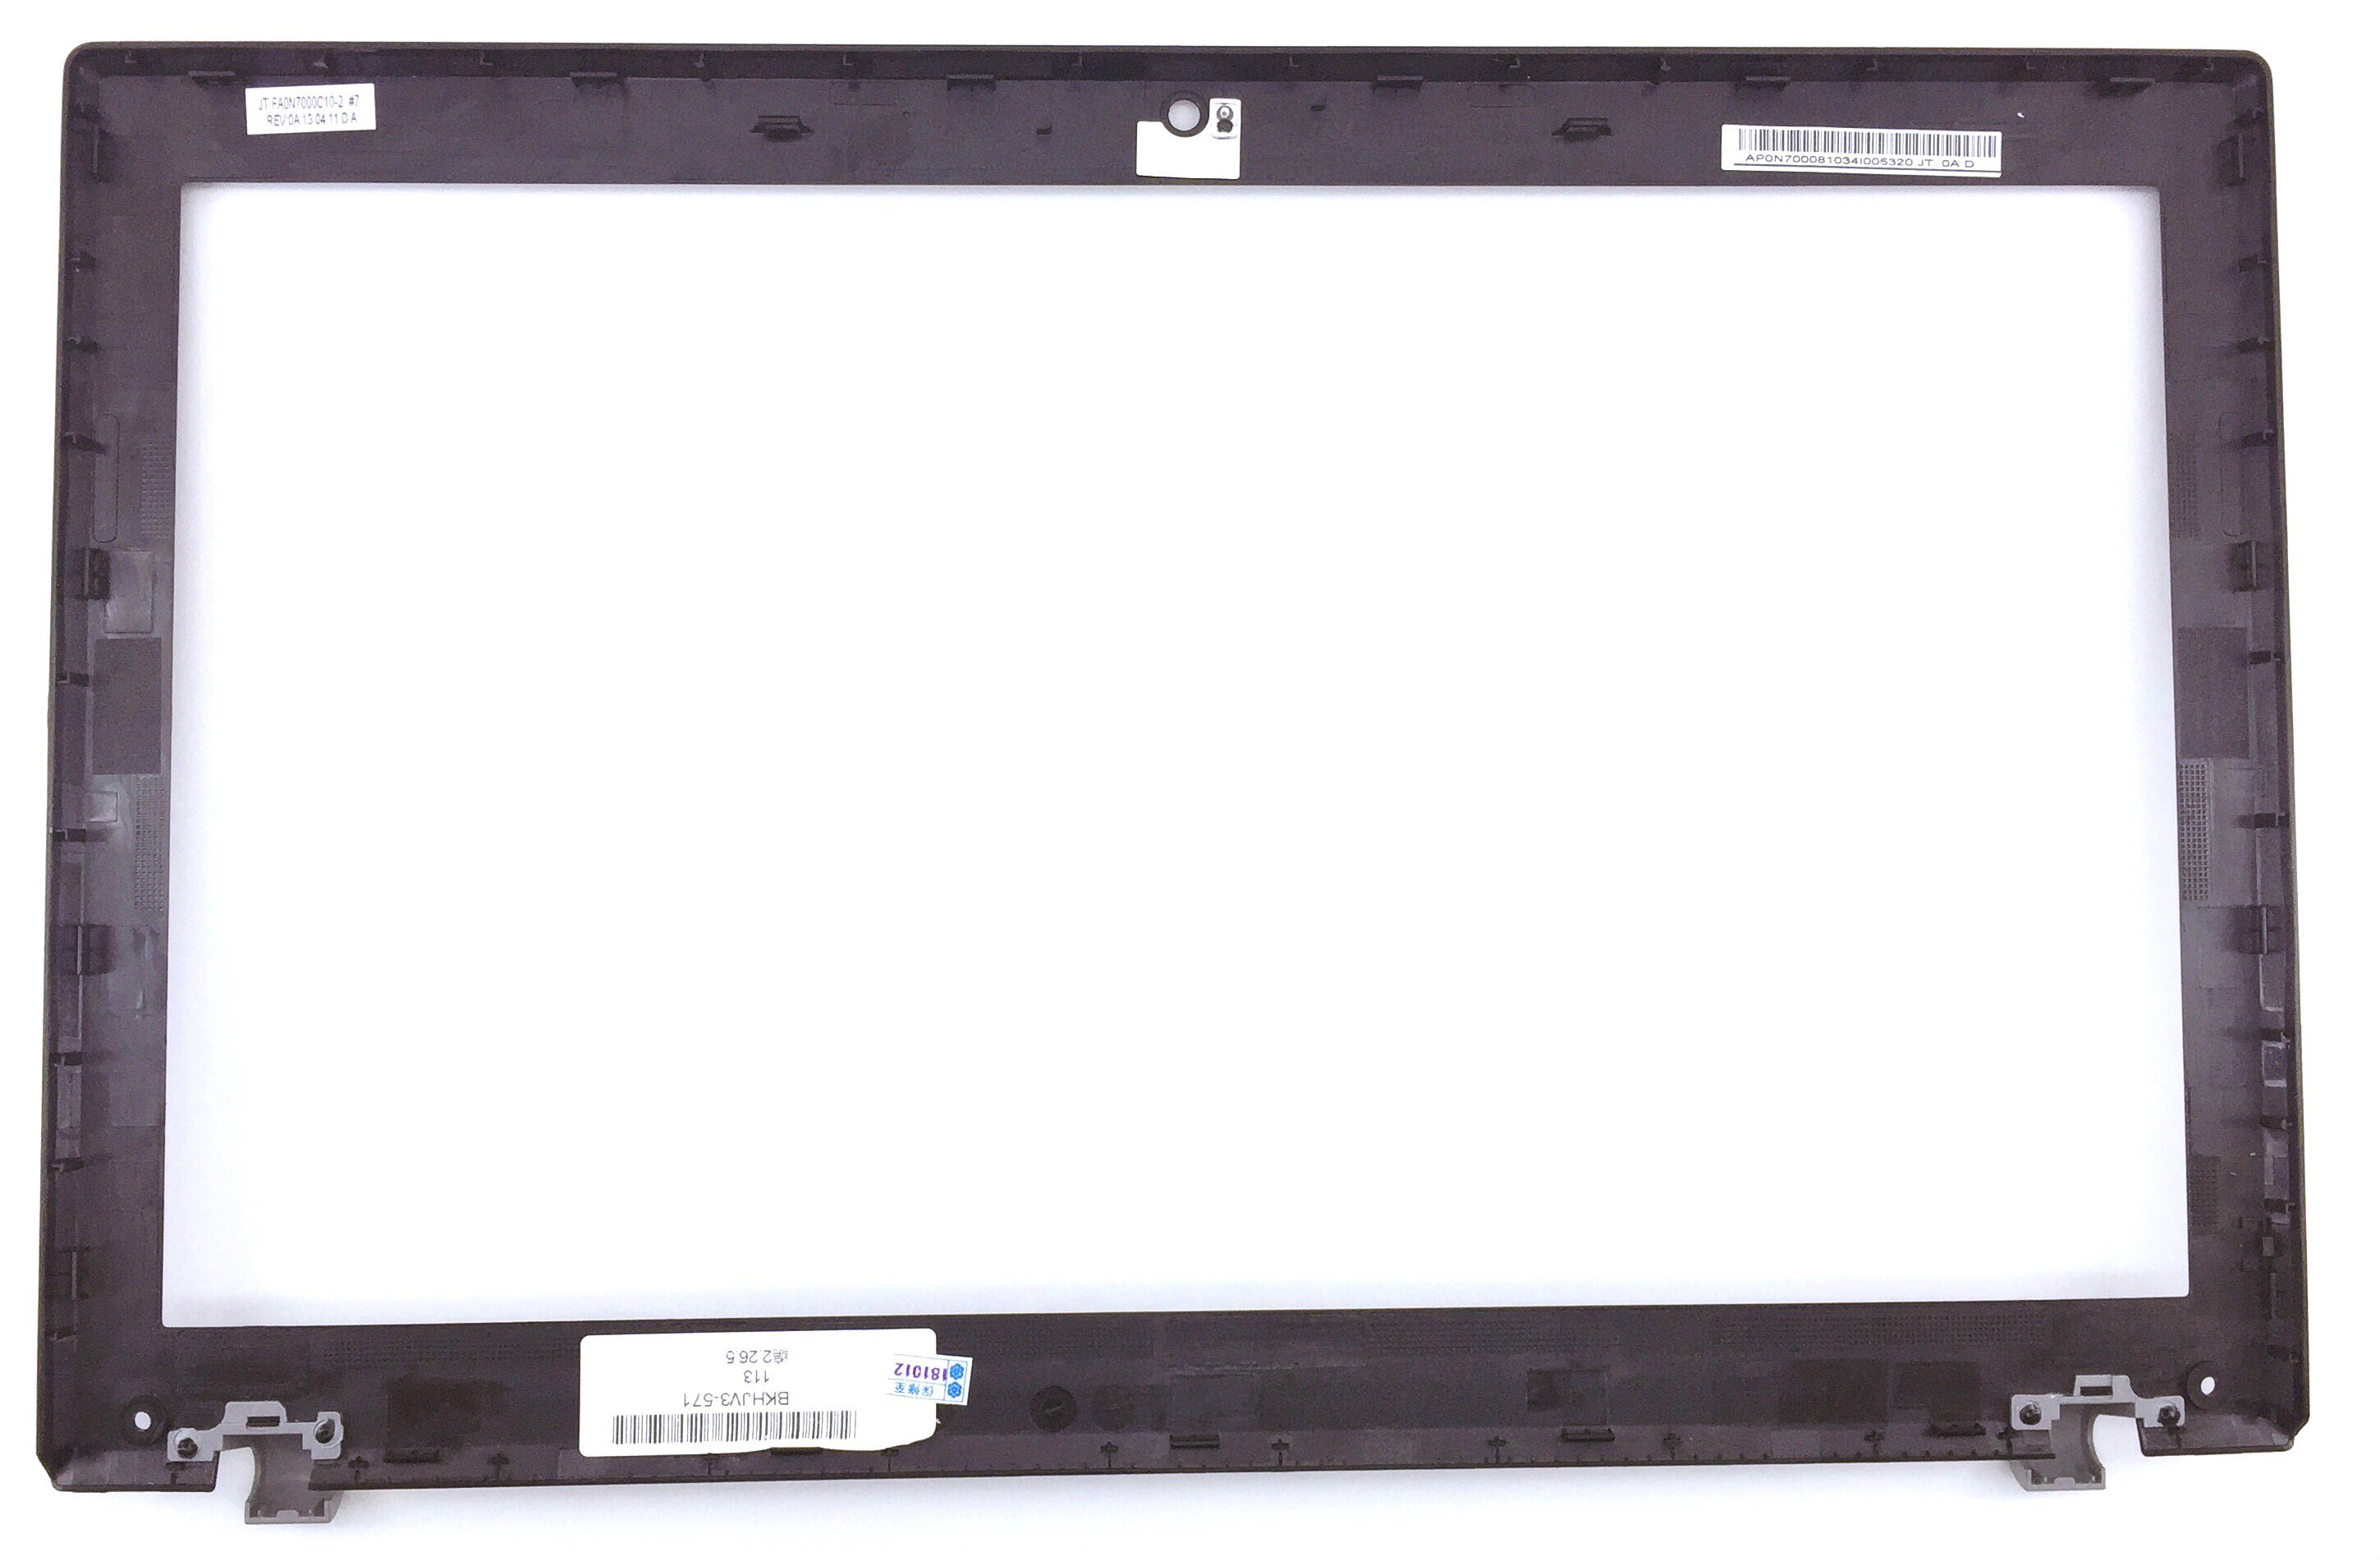 Корпус Ноутбука Acer Aspire V3 571g Купить